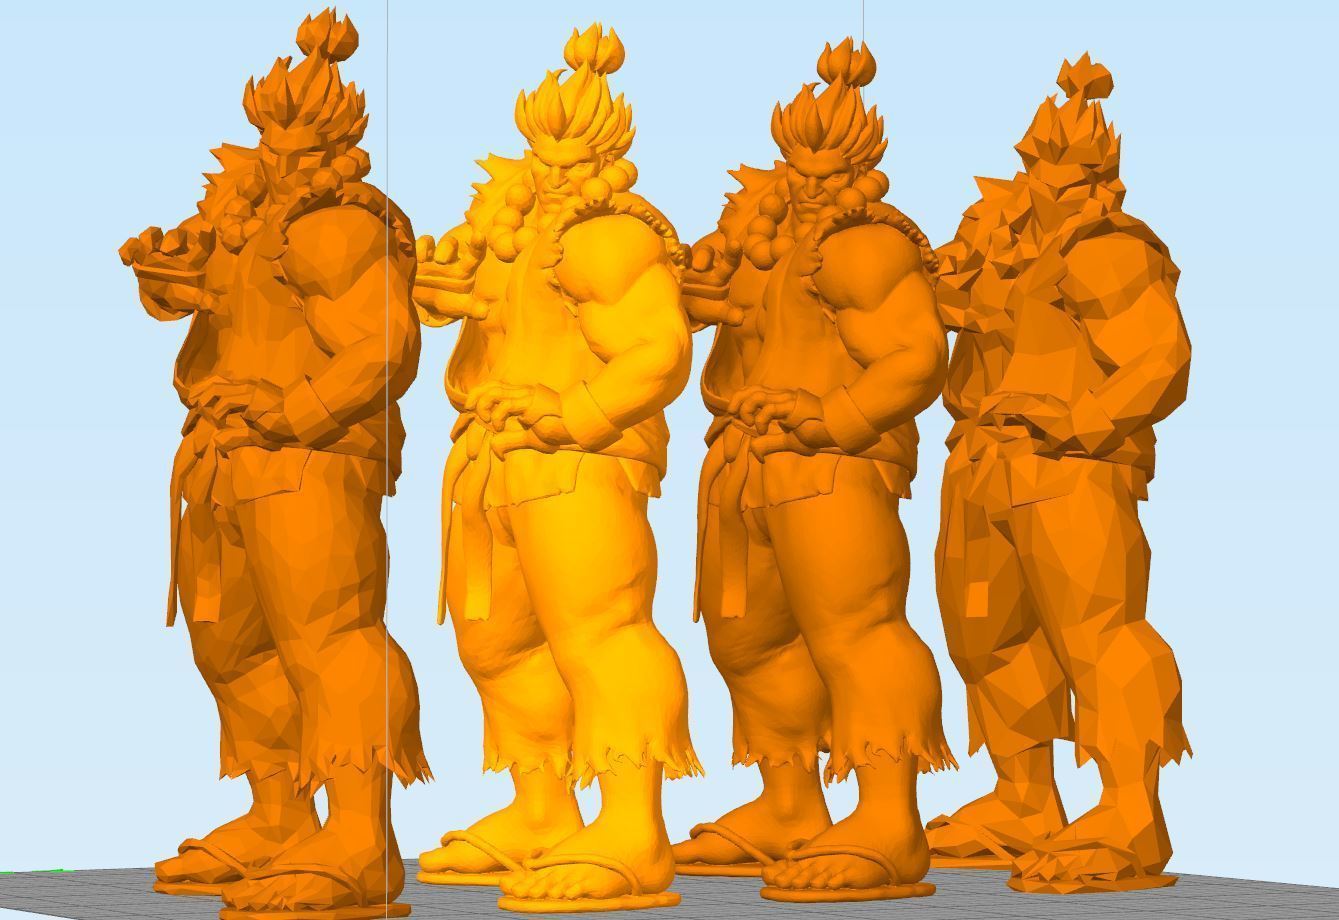 Akuma 3D PRINT statue of street fighter character 3D model 3D